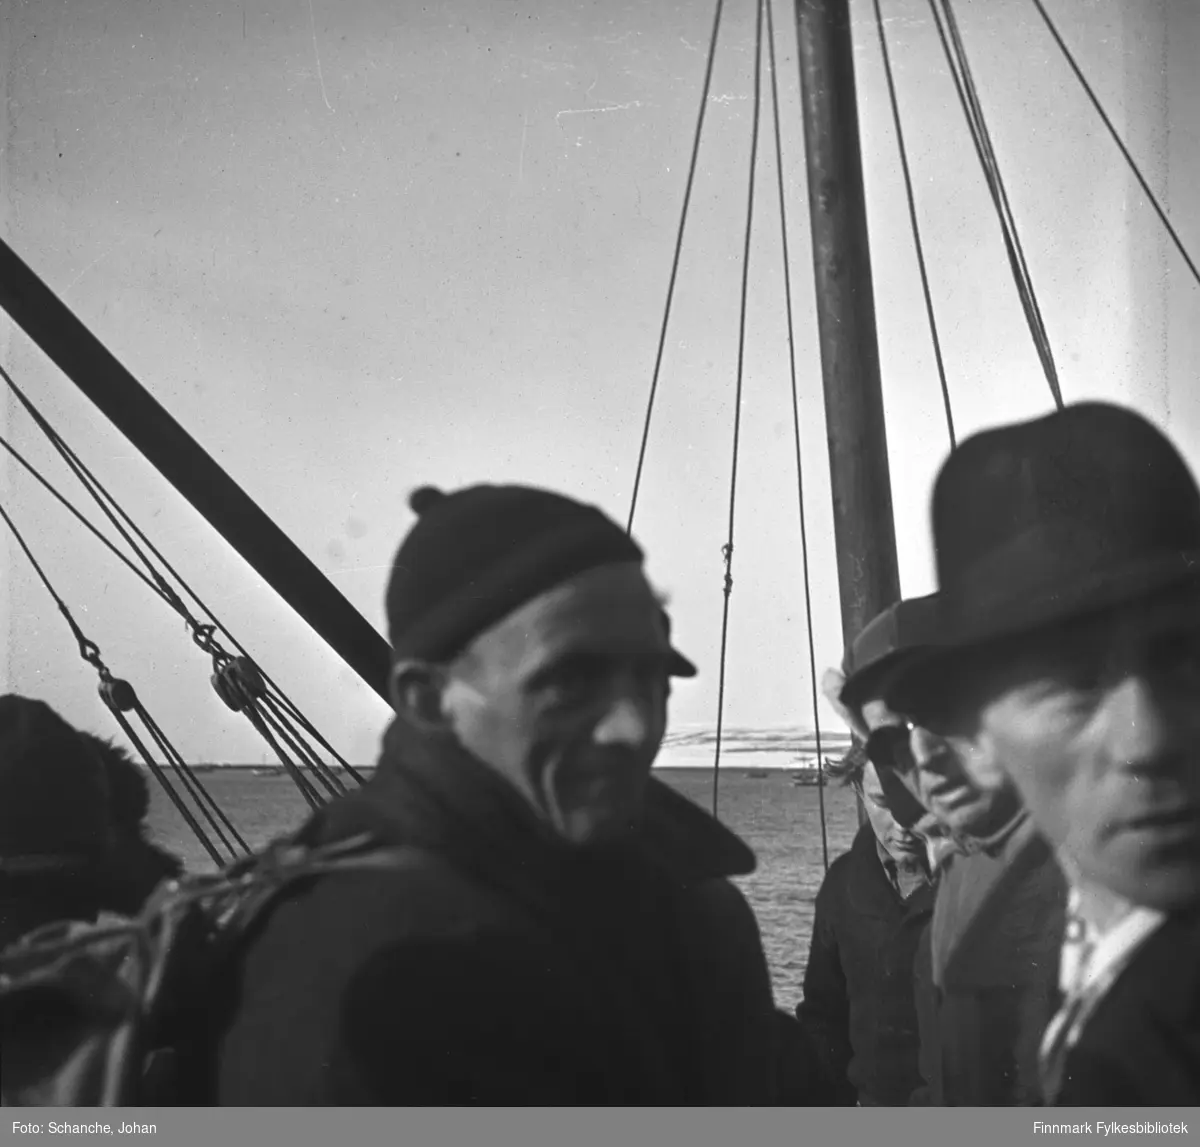 Fra kretsrennet i Vadsø 1946. Olav Økern ankommer Vadsø for å delta. Vi ser han midt på bildet, med strikkalue og ryggsekk. Det er flere menn på bildet, den nærmeste i hatt. De er frem- deles ombord i en båt.